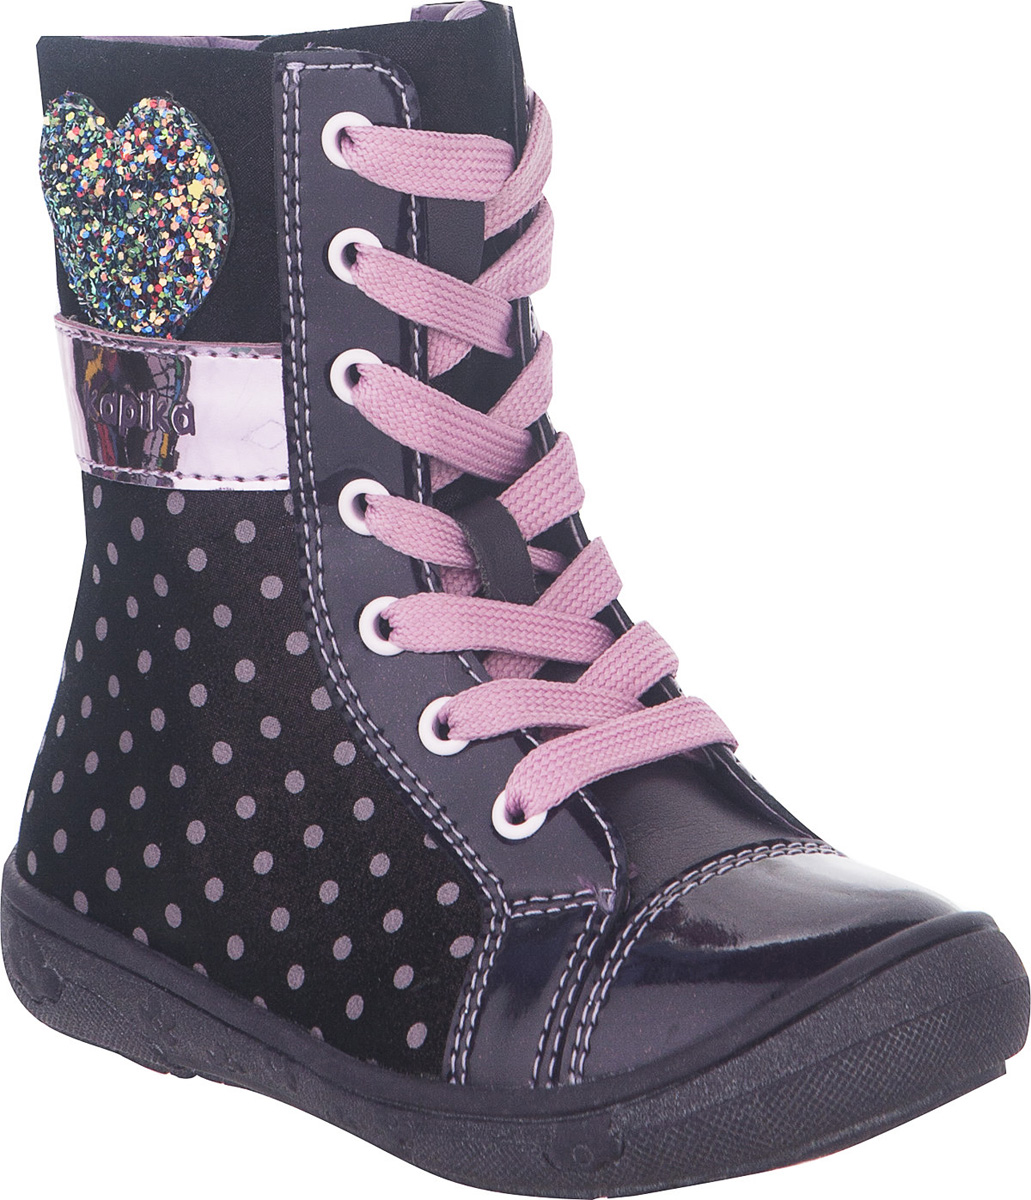 Ботинки для девочки Kapika, цвет: фиолетовый, розовый. 52285. Размер 25